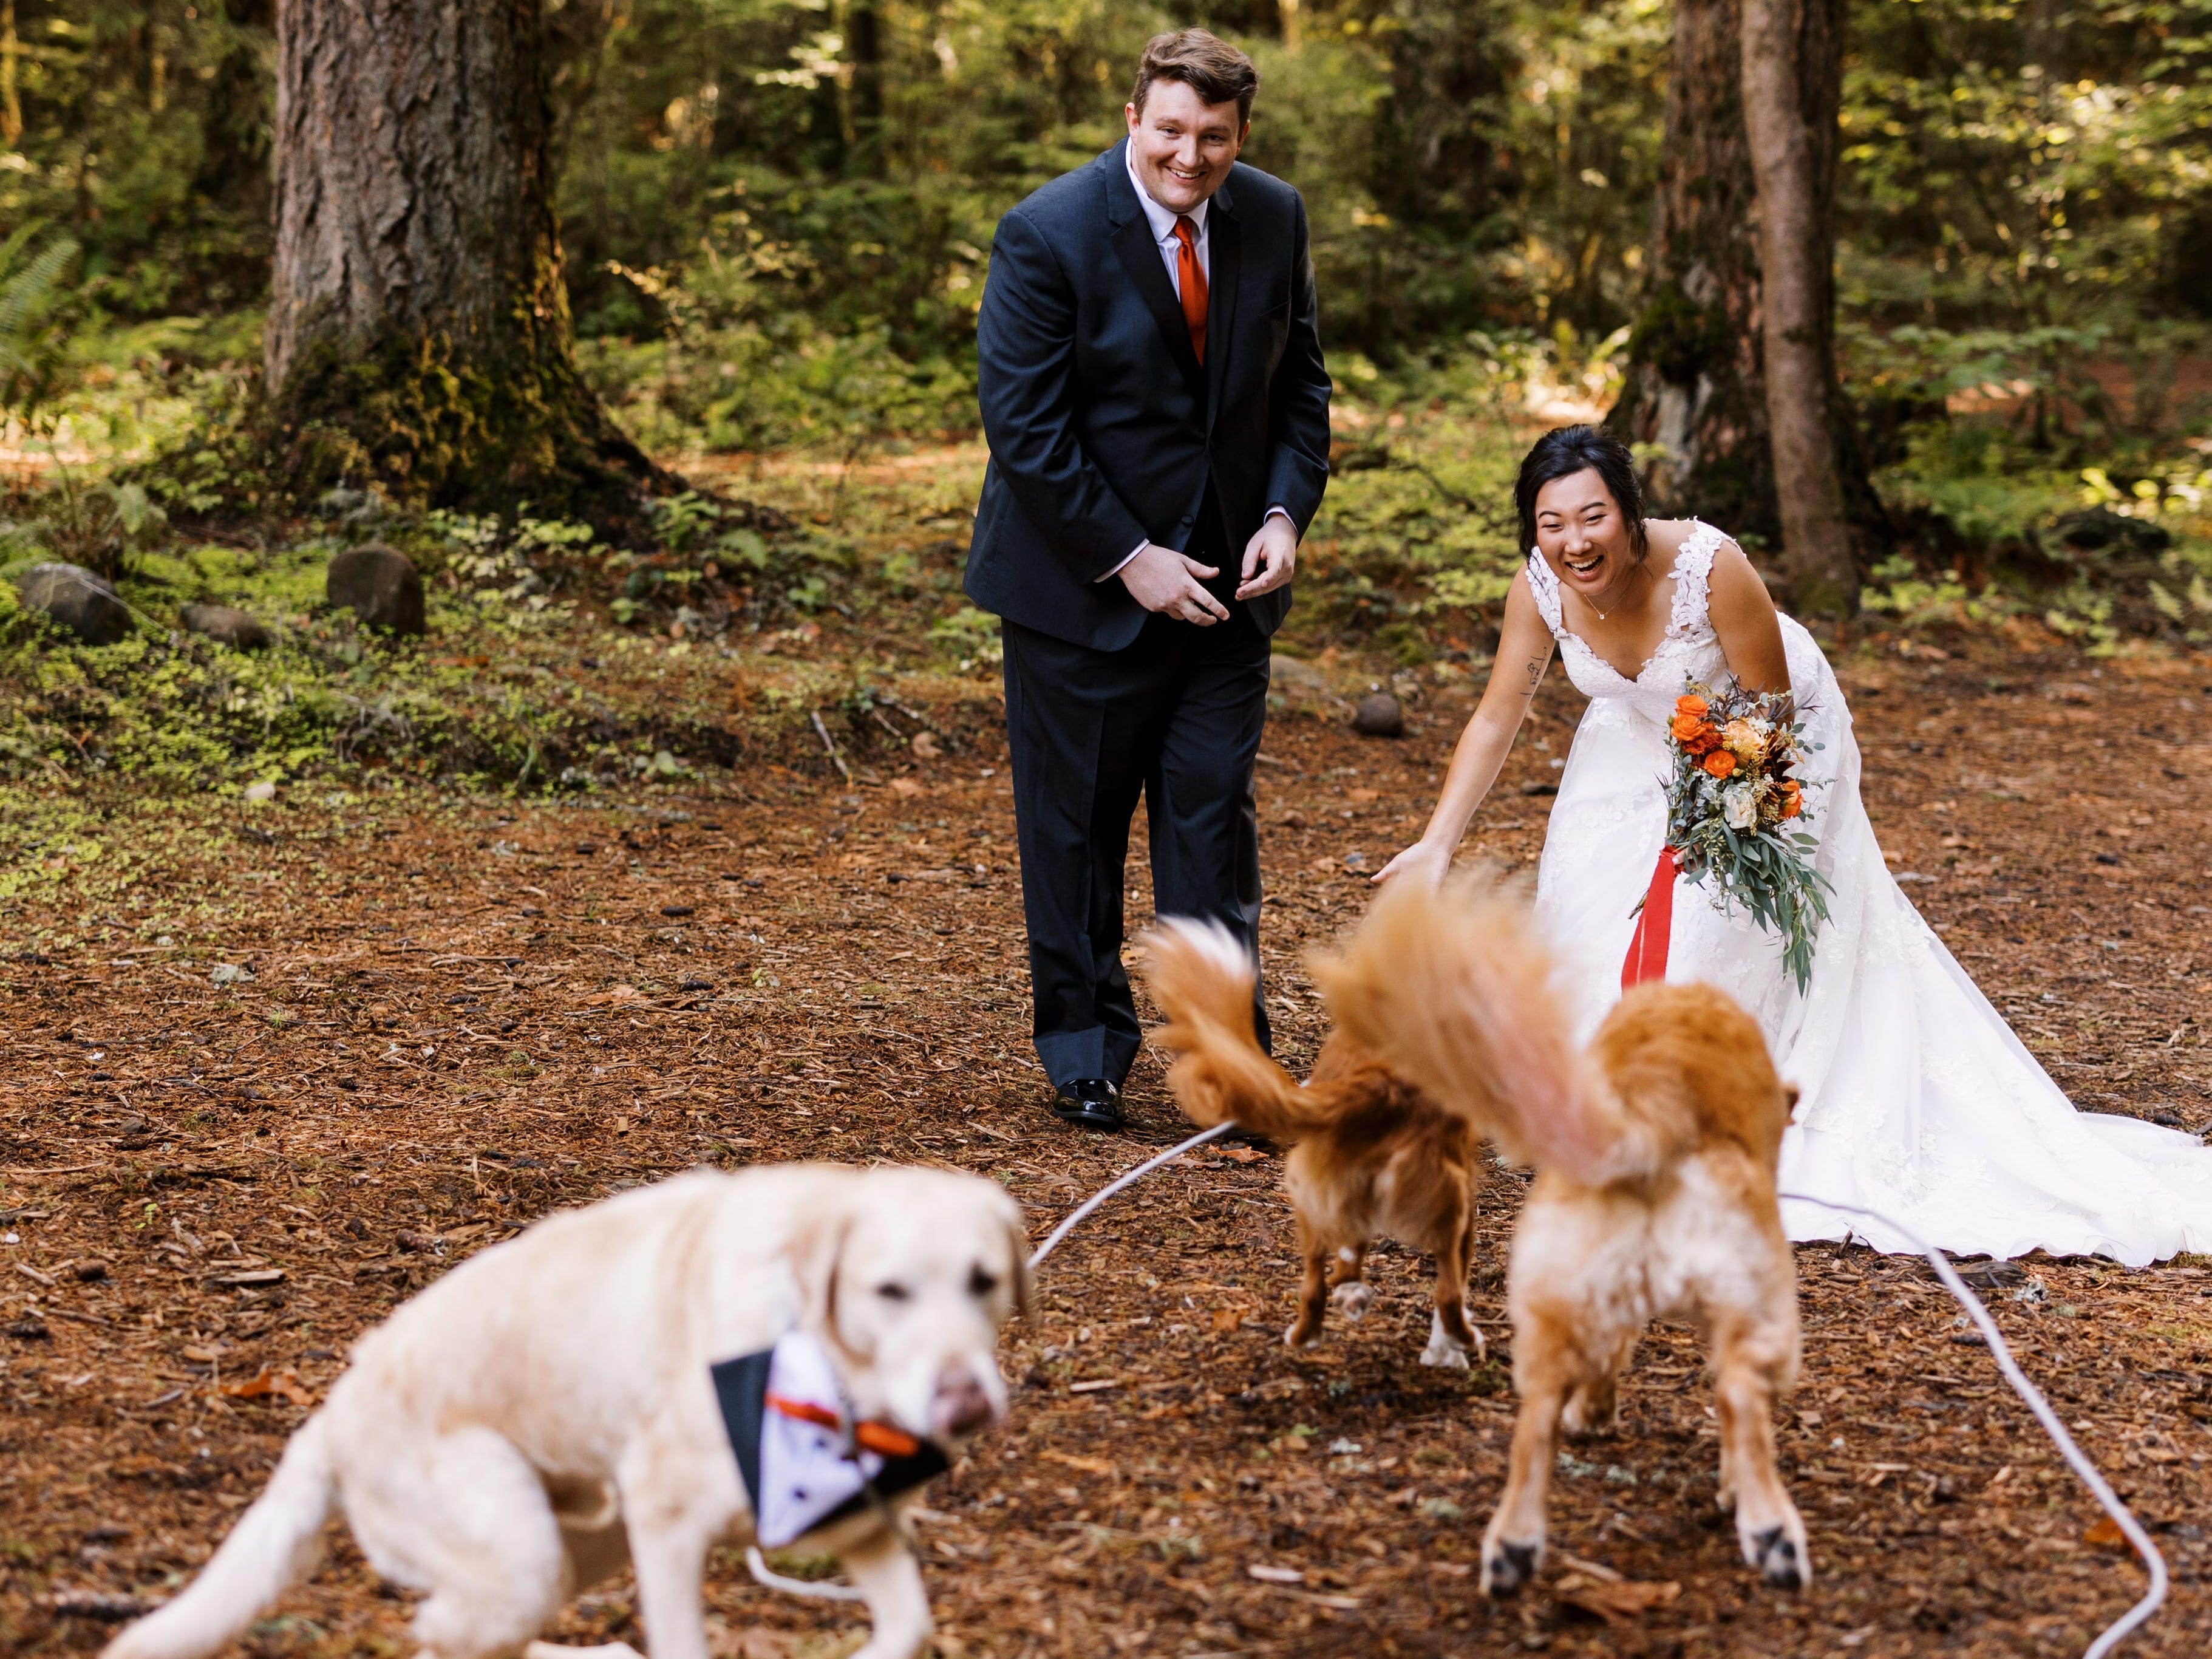 Braut und Bräutigam begrüßen zwei Hunde, die auf sie zulaufen, während ein anderer auf die Kamera zuläuft.